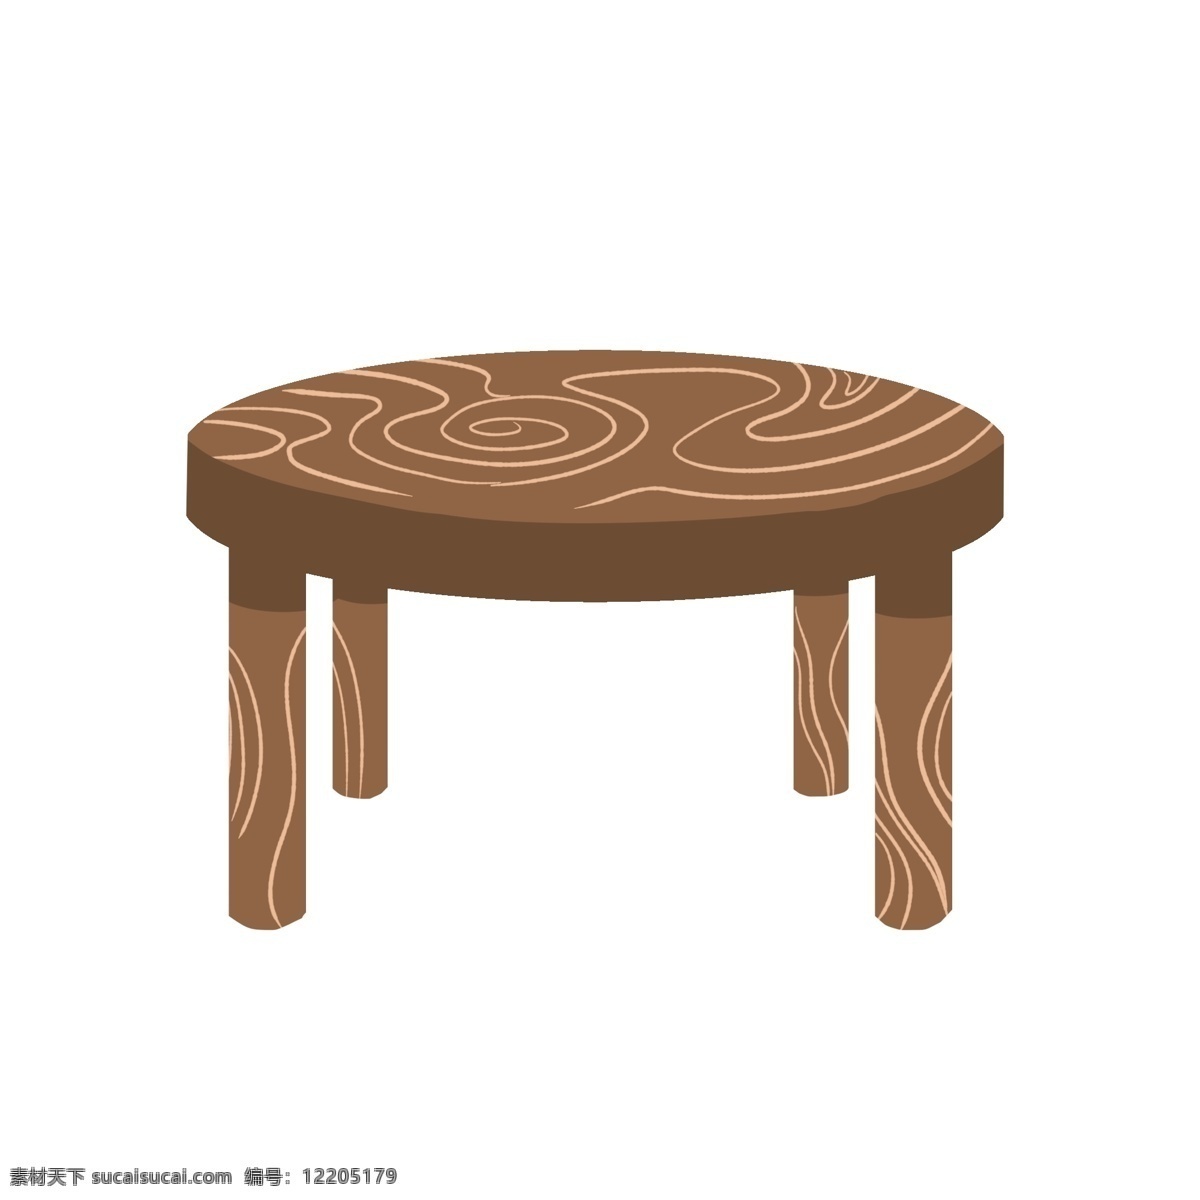 圆形 实木 餐桌 插画 桌子 实木餐桌 餐桌插图 一张 吃饭 餐桌家具